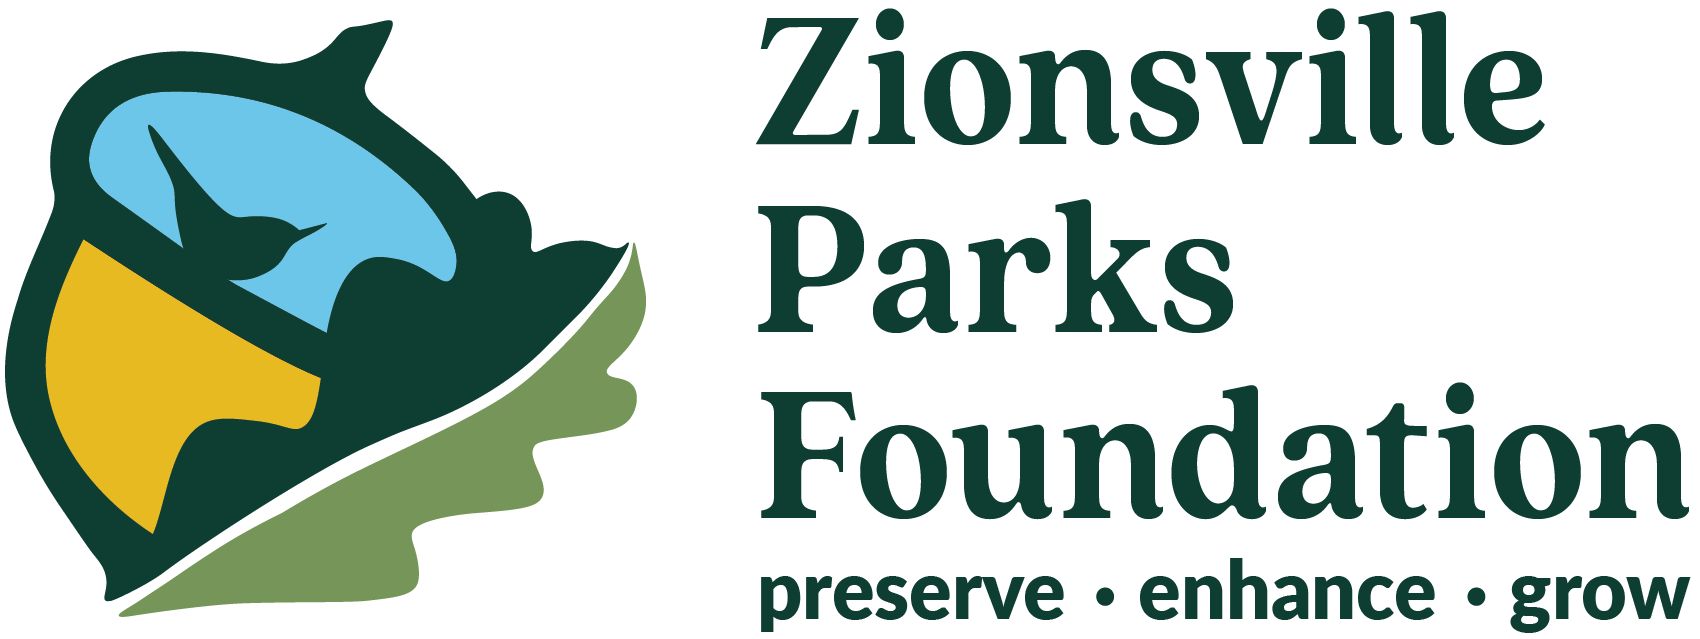 Zionsville Parks Foundation